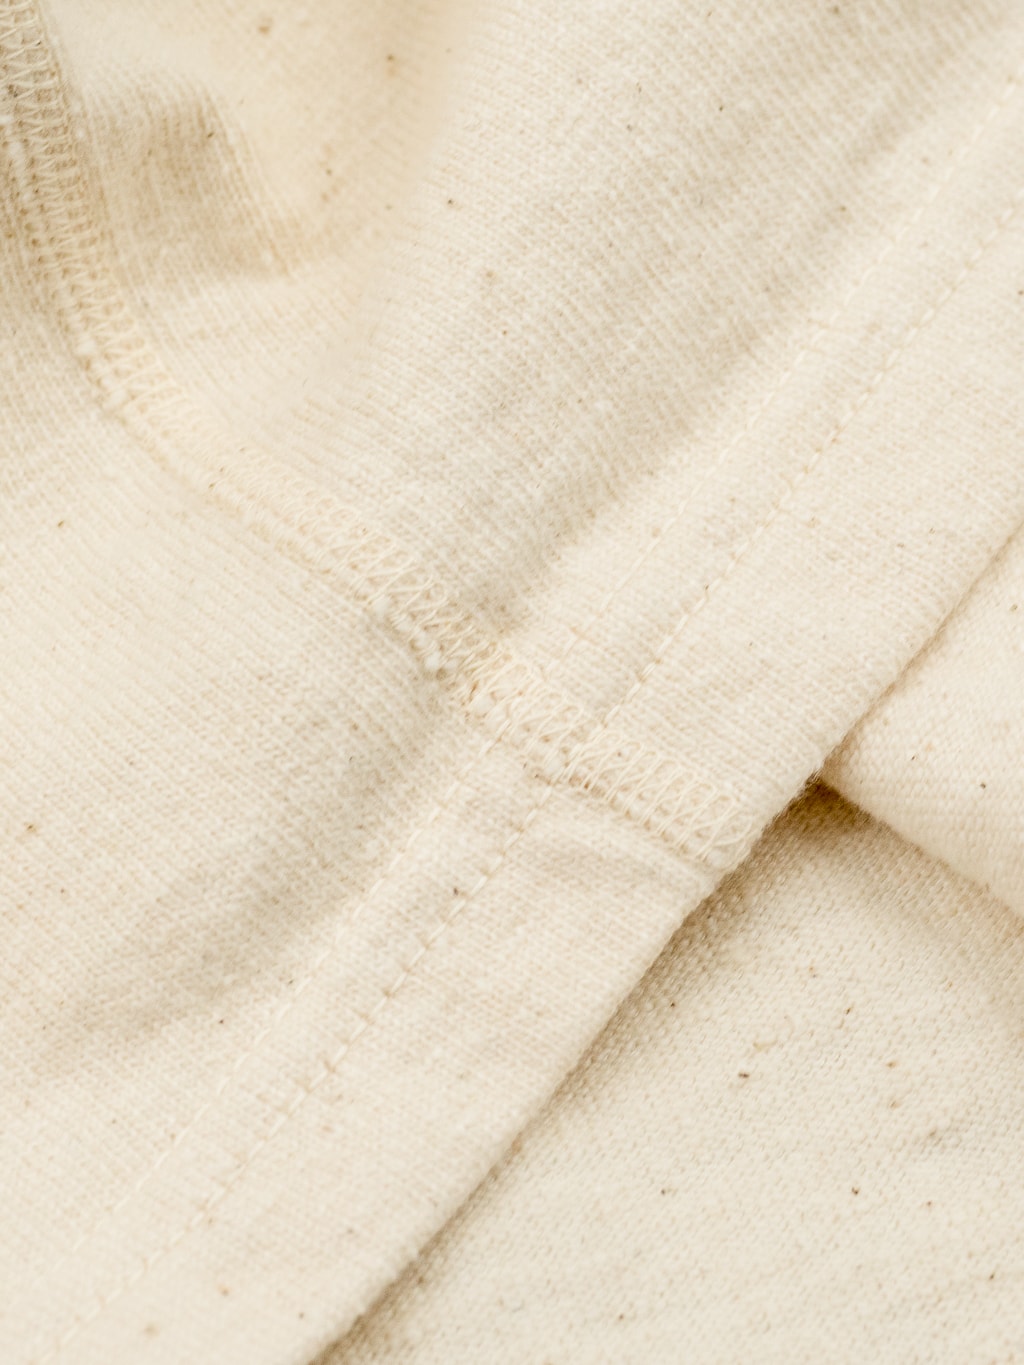 samurai jeans japanese cotton slub tshirt henley natural hem